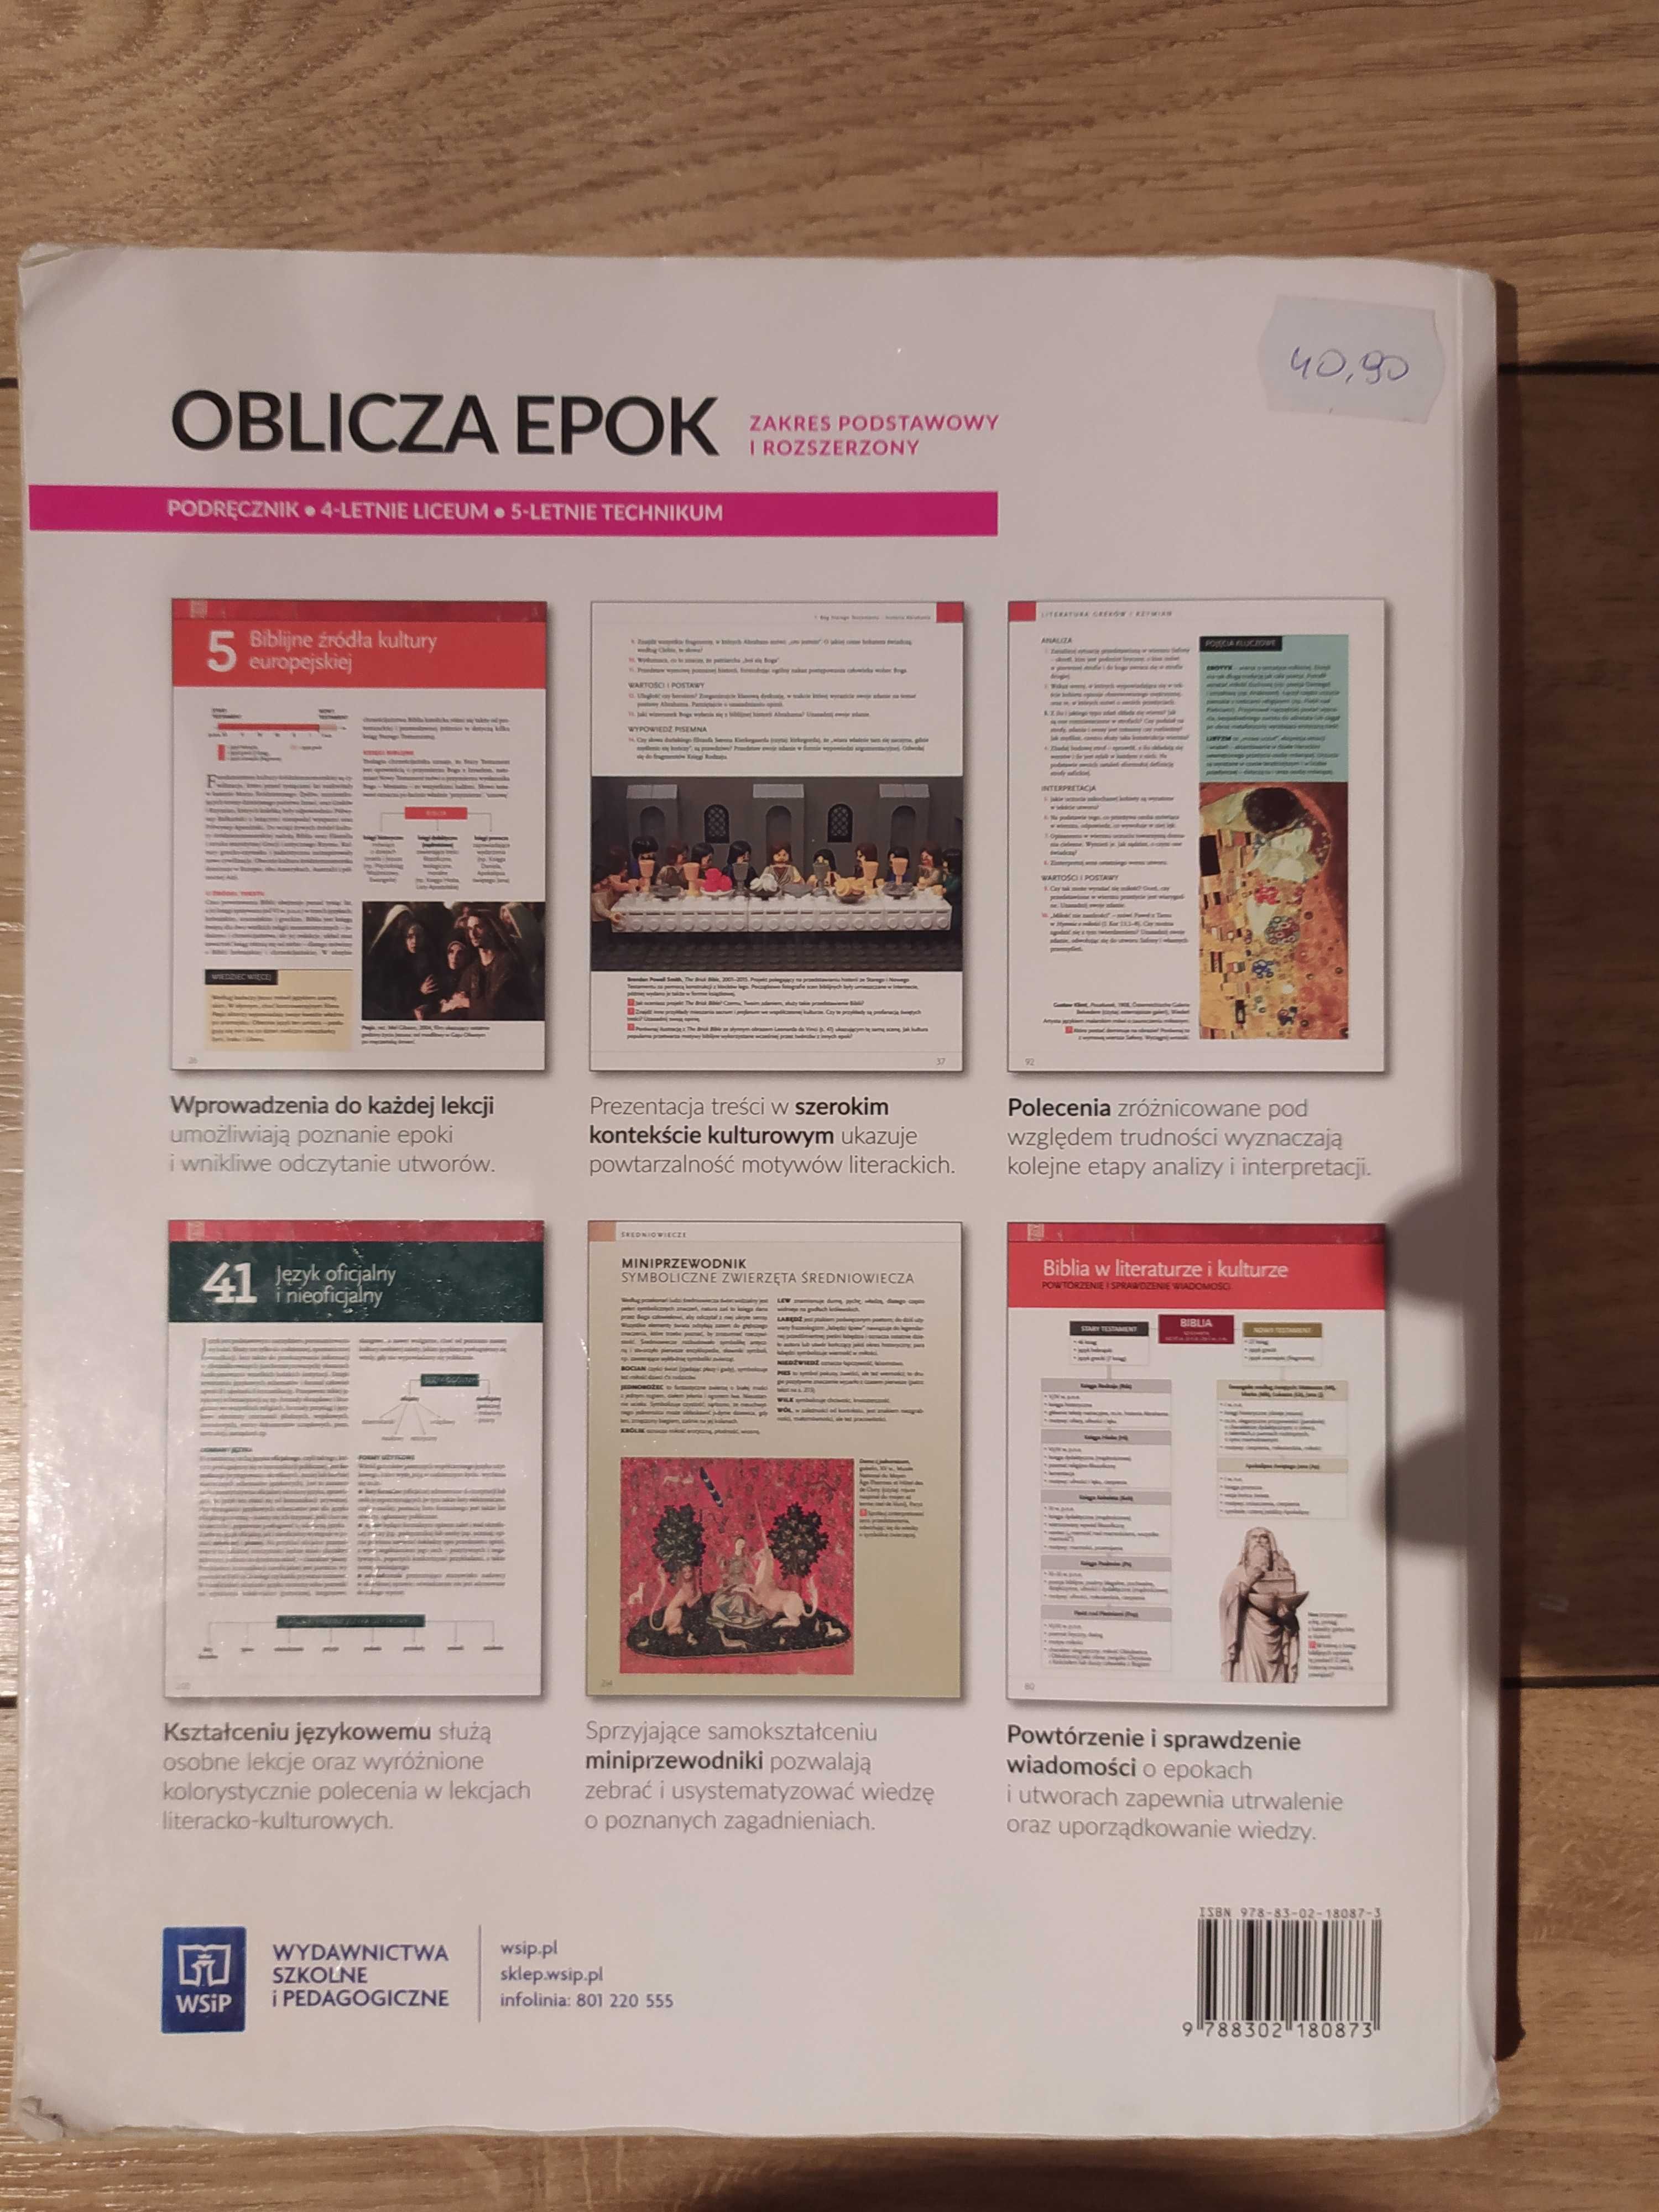 OBLICZA EPOK 1.1 Język Polski